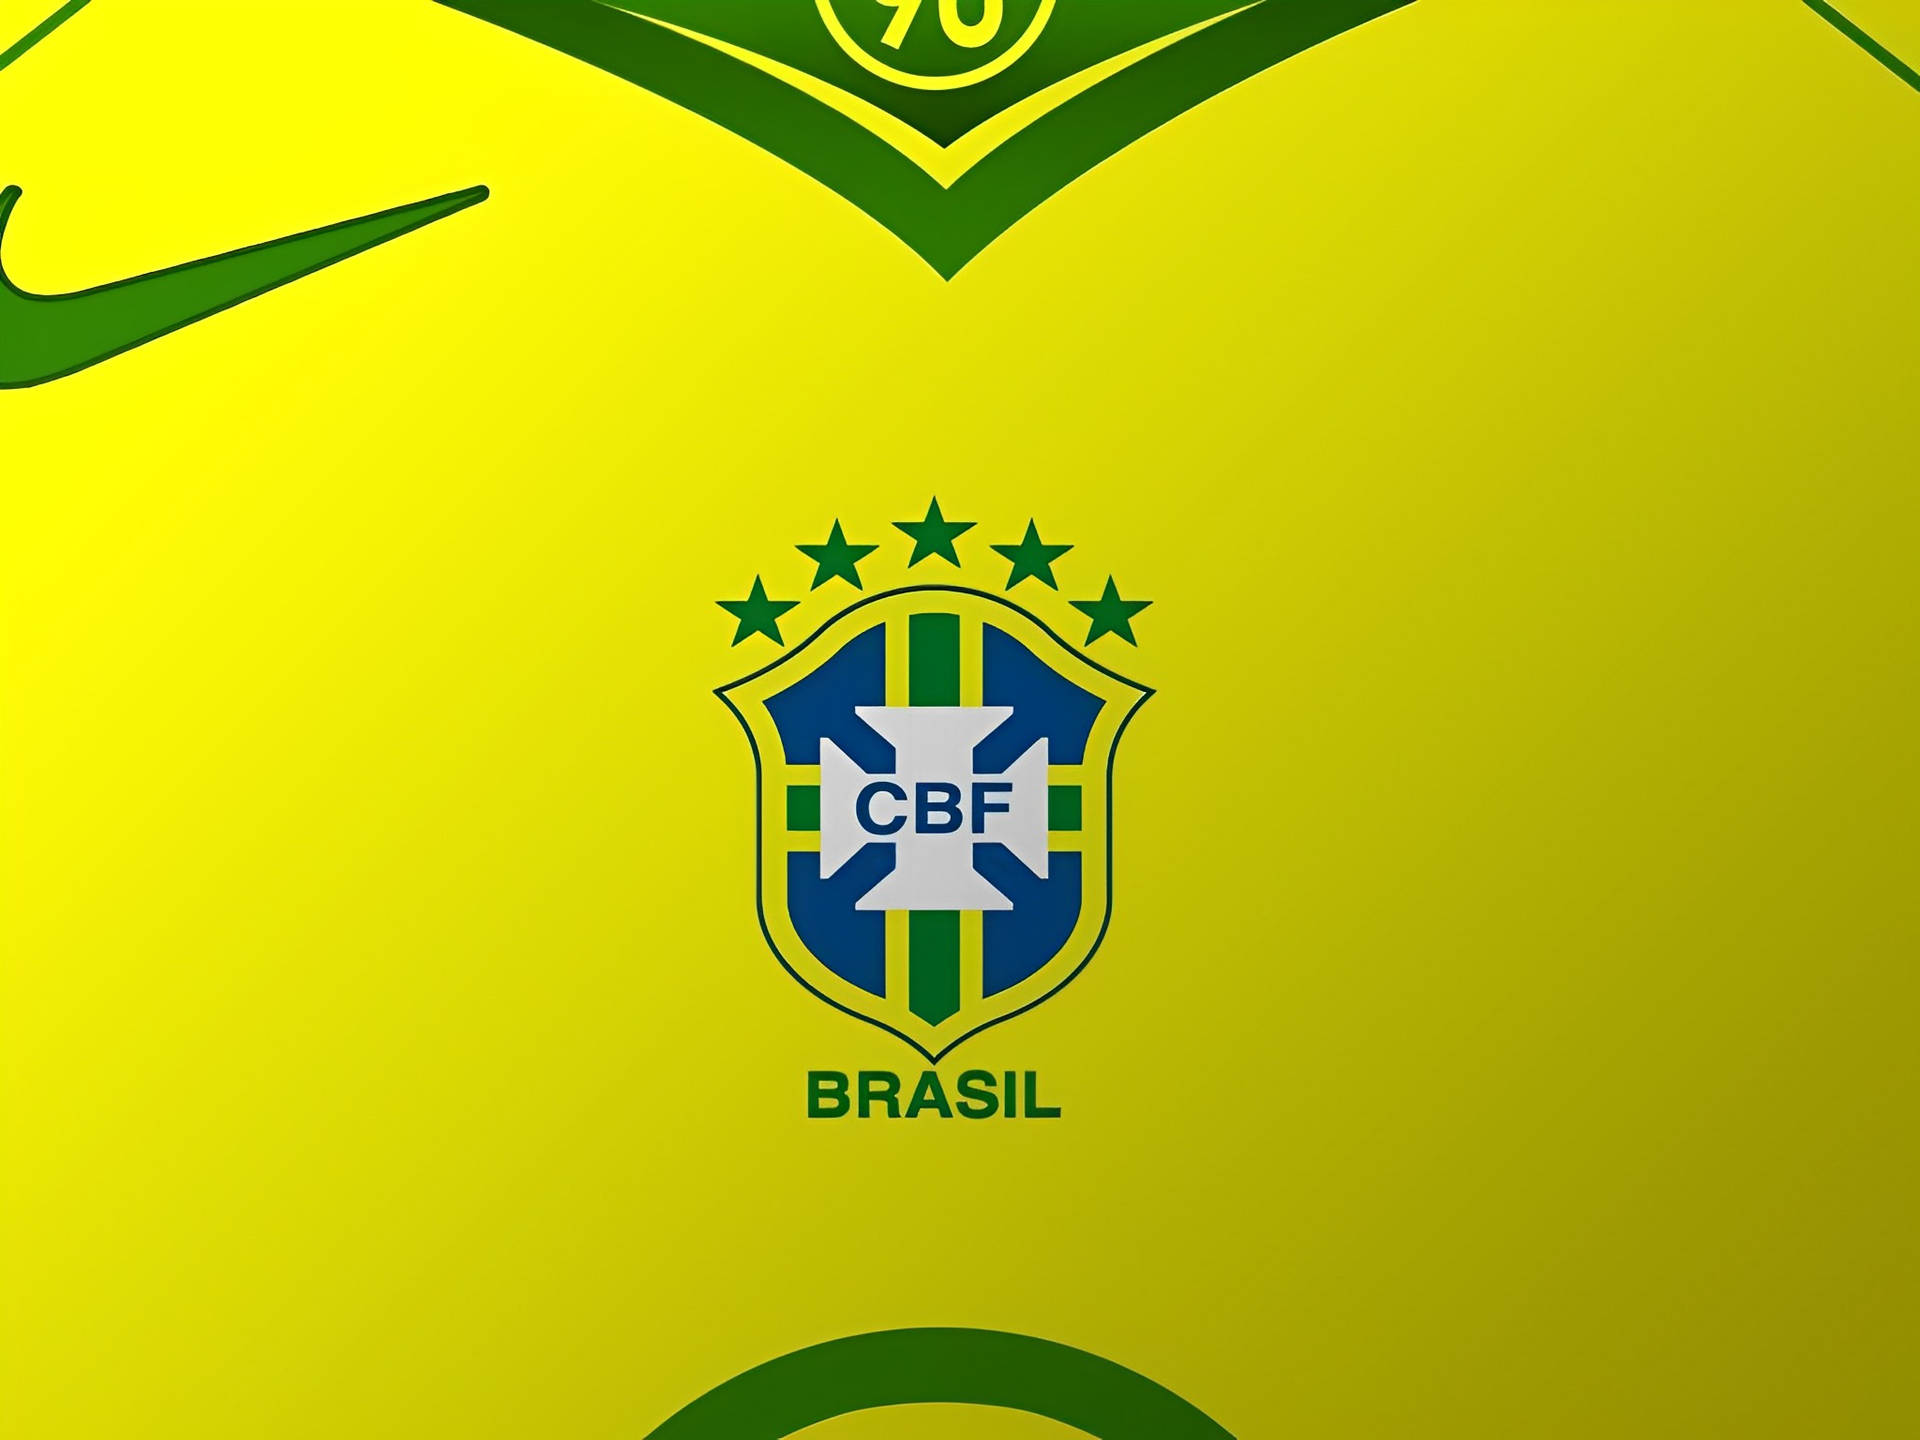 Logode La Selección Nacional De Fútbol De Brasil Cbf. Fondo de pantalla